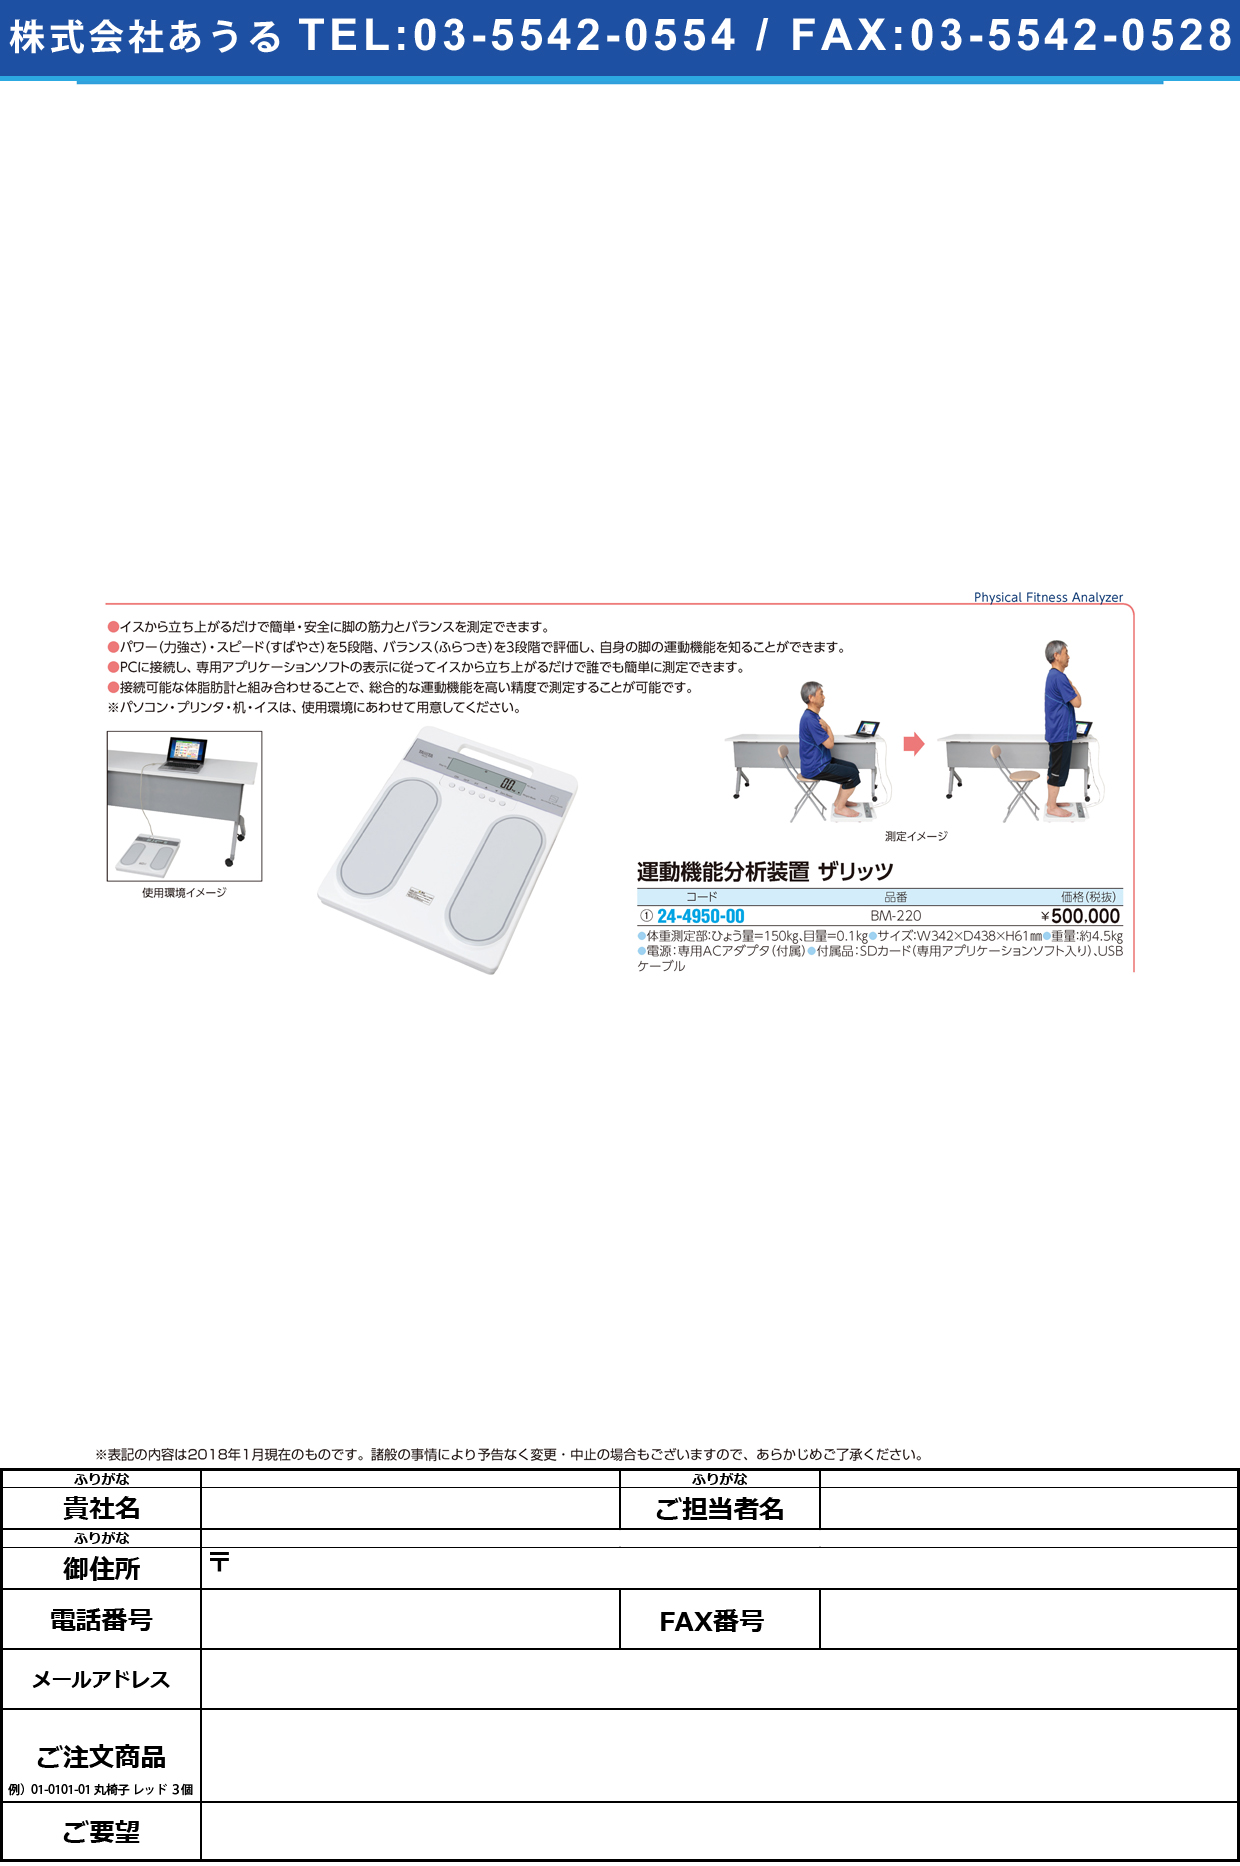 (24-4950-00)運動機能分析装置ｚａＲｉｔｚザリッツ BM-220 ｳﾝﾄﾞｳｷﾉｳﾌﾞﾝｾｷｿｳﾁ(タニタ)【1台単位】【2019年カタログ商品】